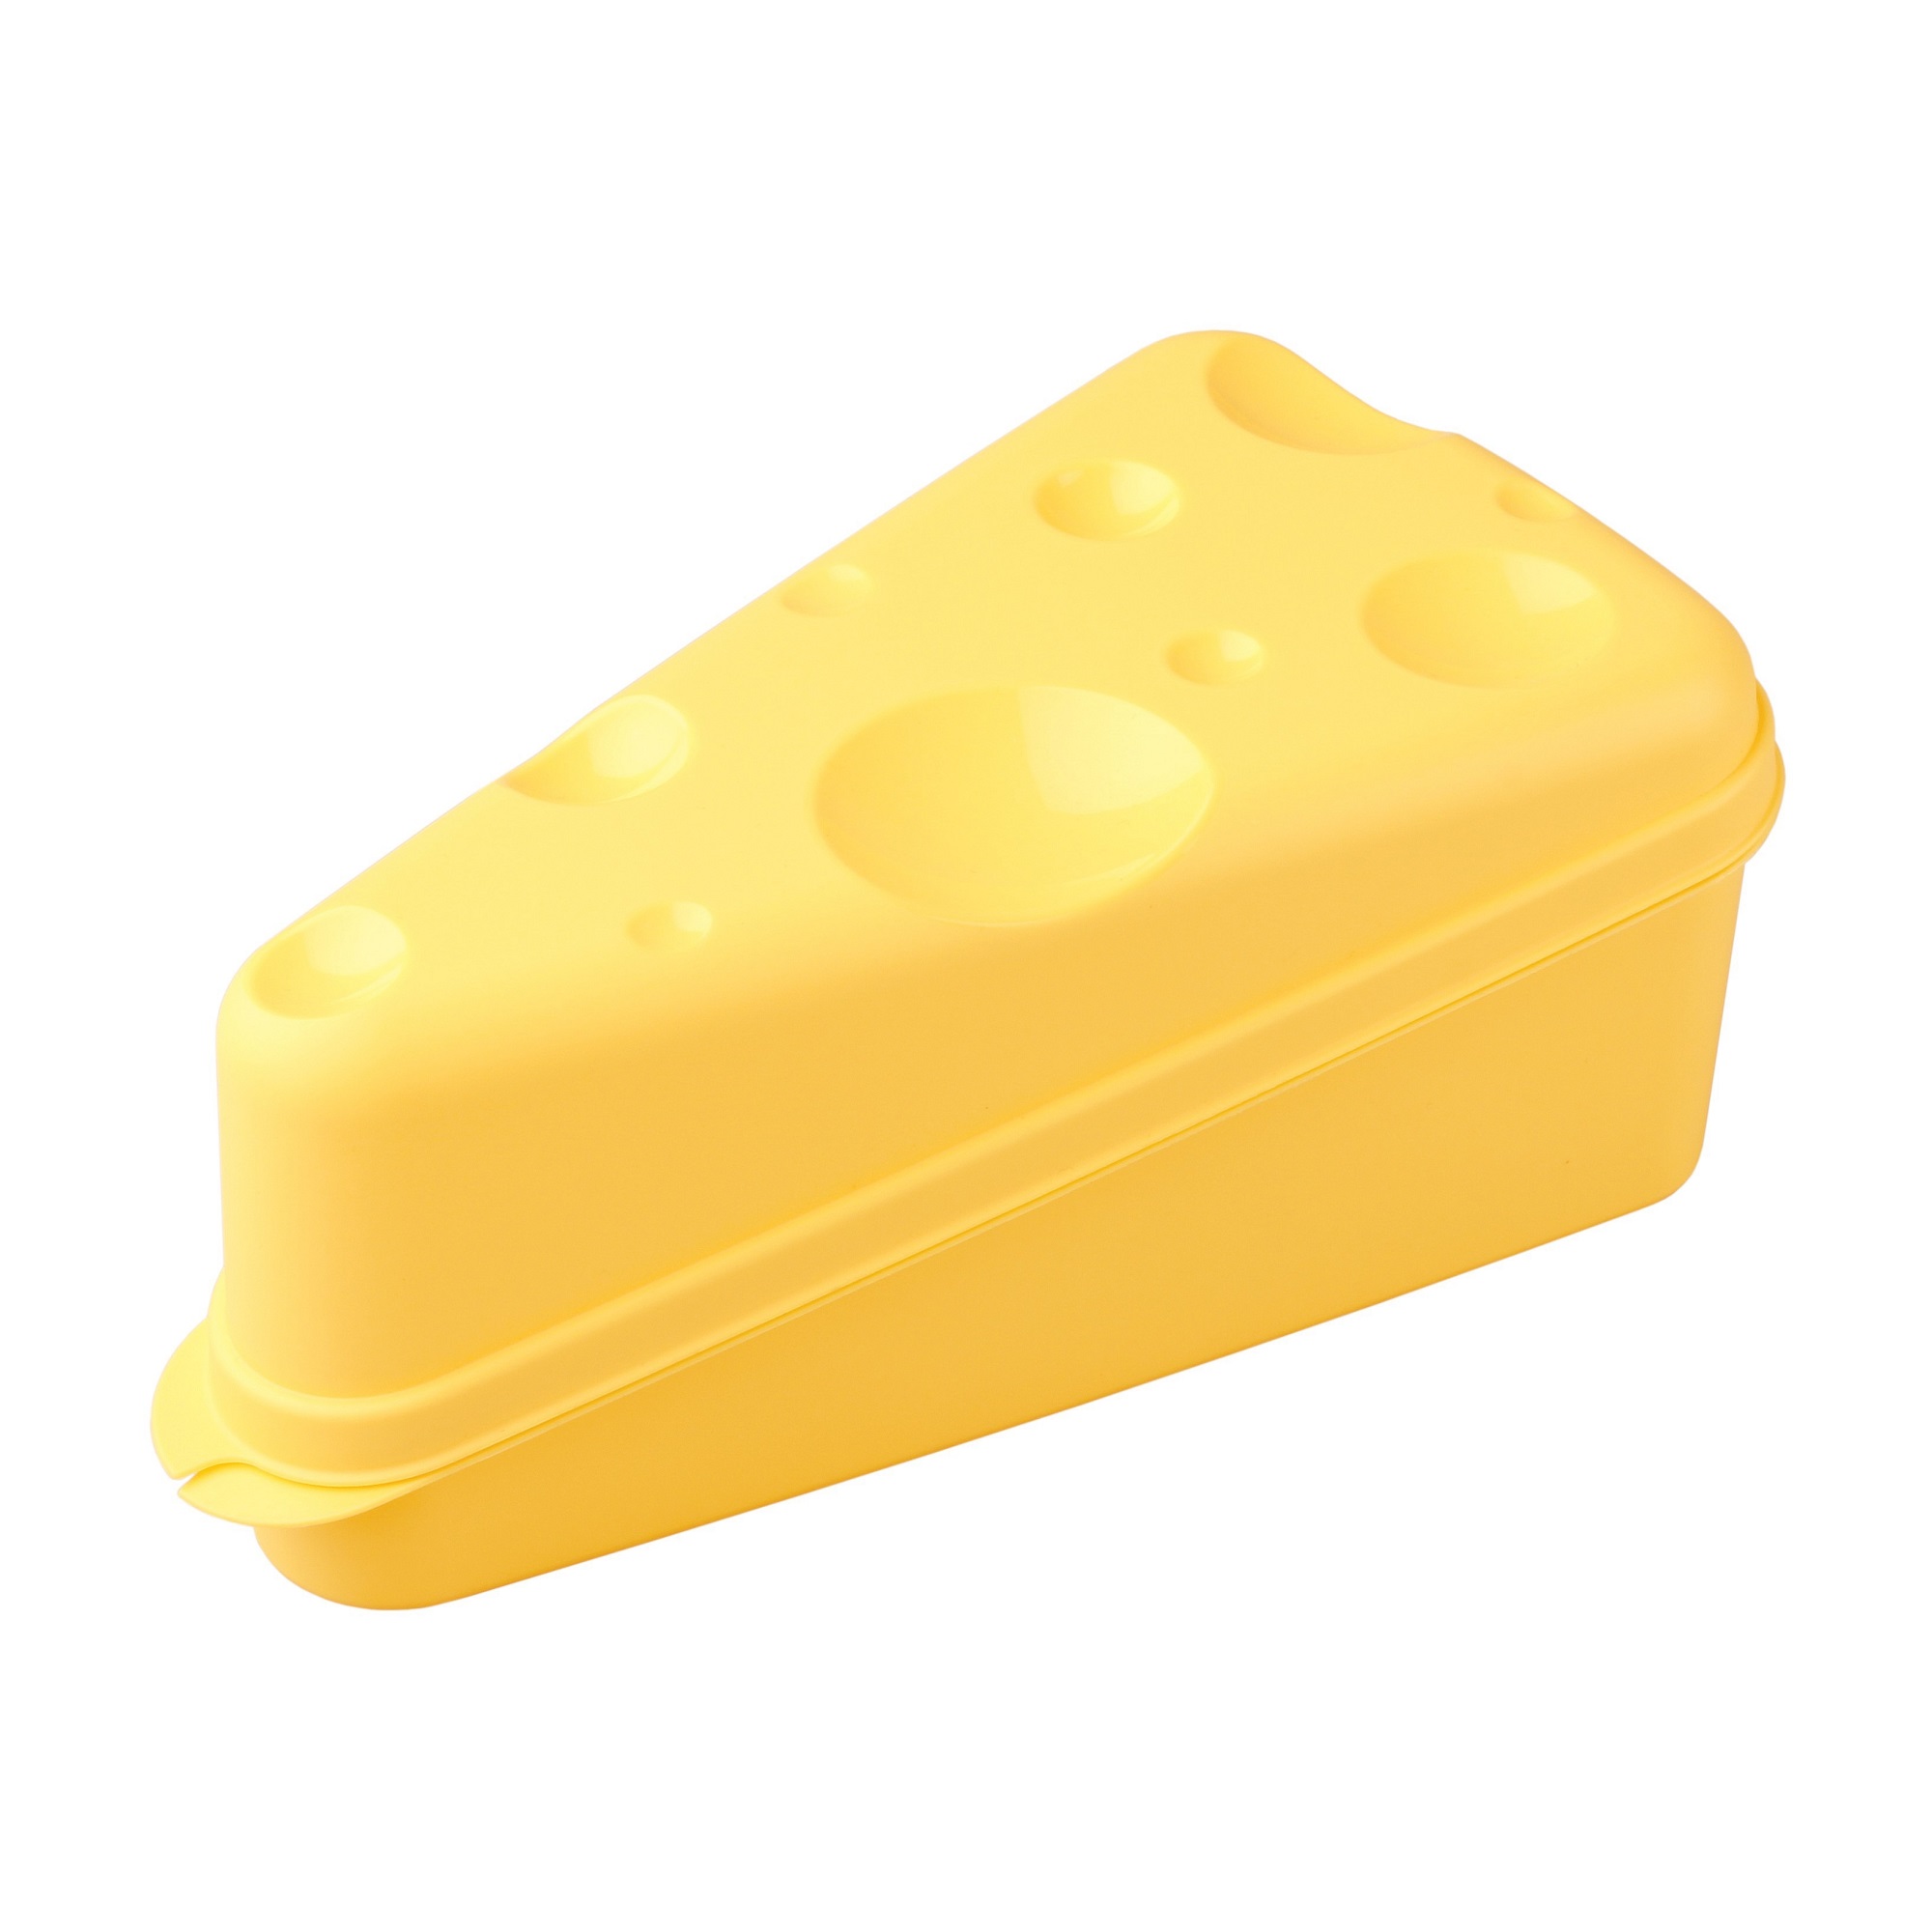 Контейнер Бытпласт для сыра (4312951) контейнер бытпласт 4312181